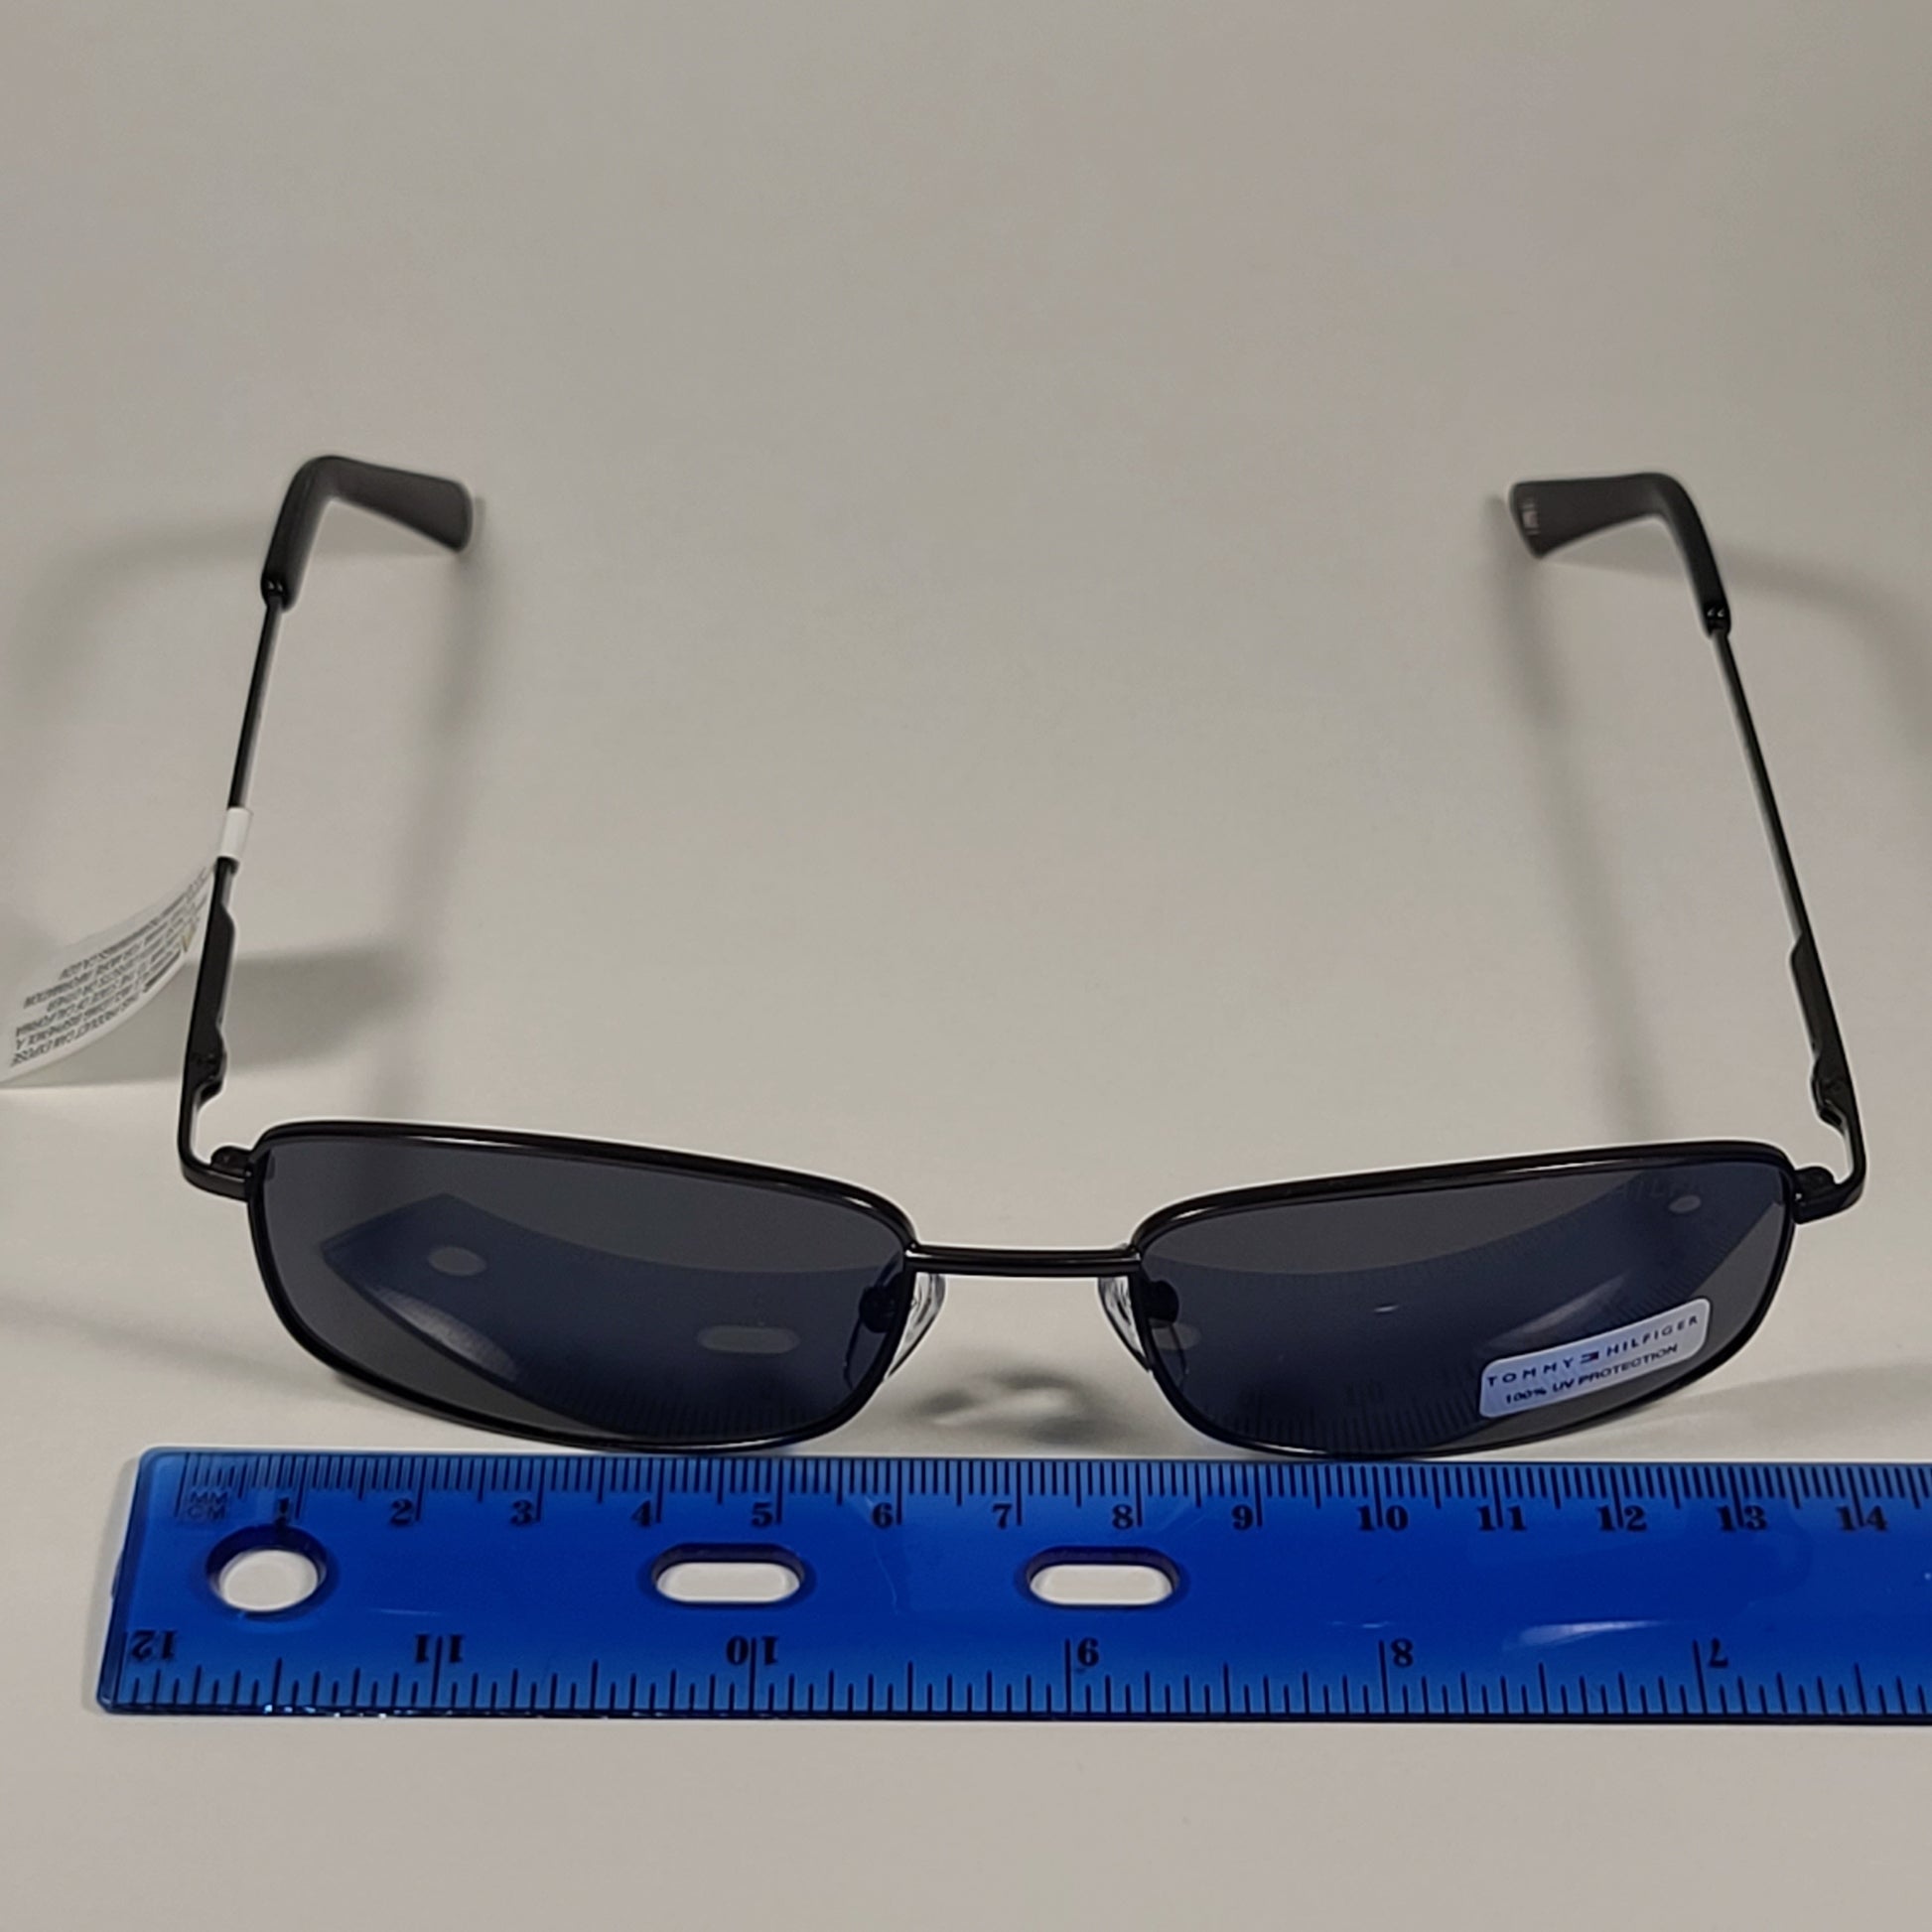 Tommy Hilfiger Newt Small Rectangular Sunglasses Gunmetal Frame Gray Lens NEWT MM OM535 - Sunglasses